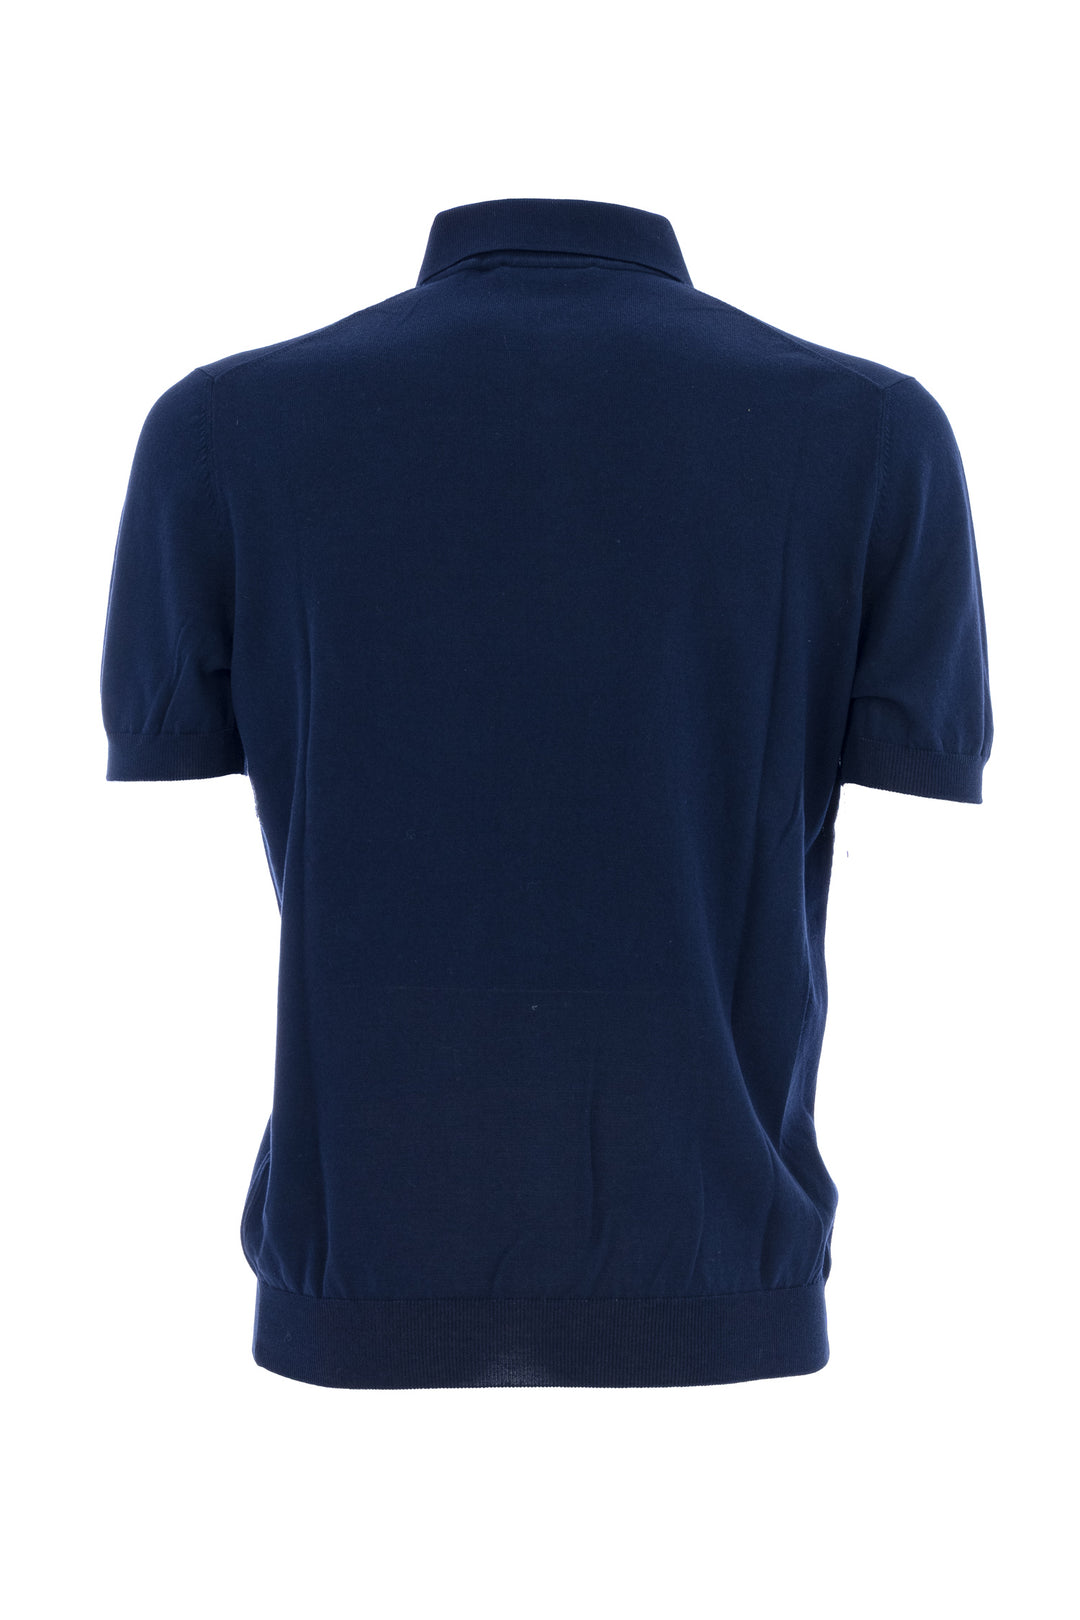 GRAN SASSO Polo in maglia fresh cotton blu scuro - Mancinelli 1954